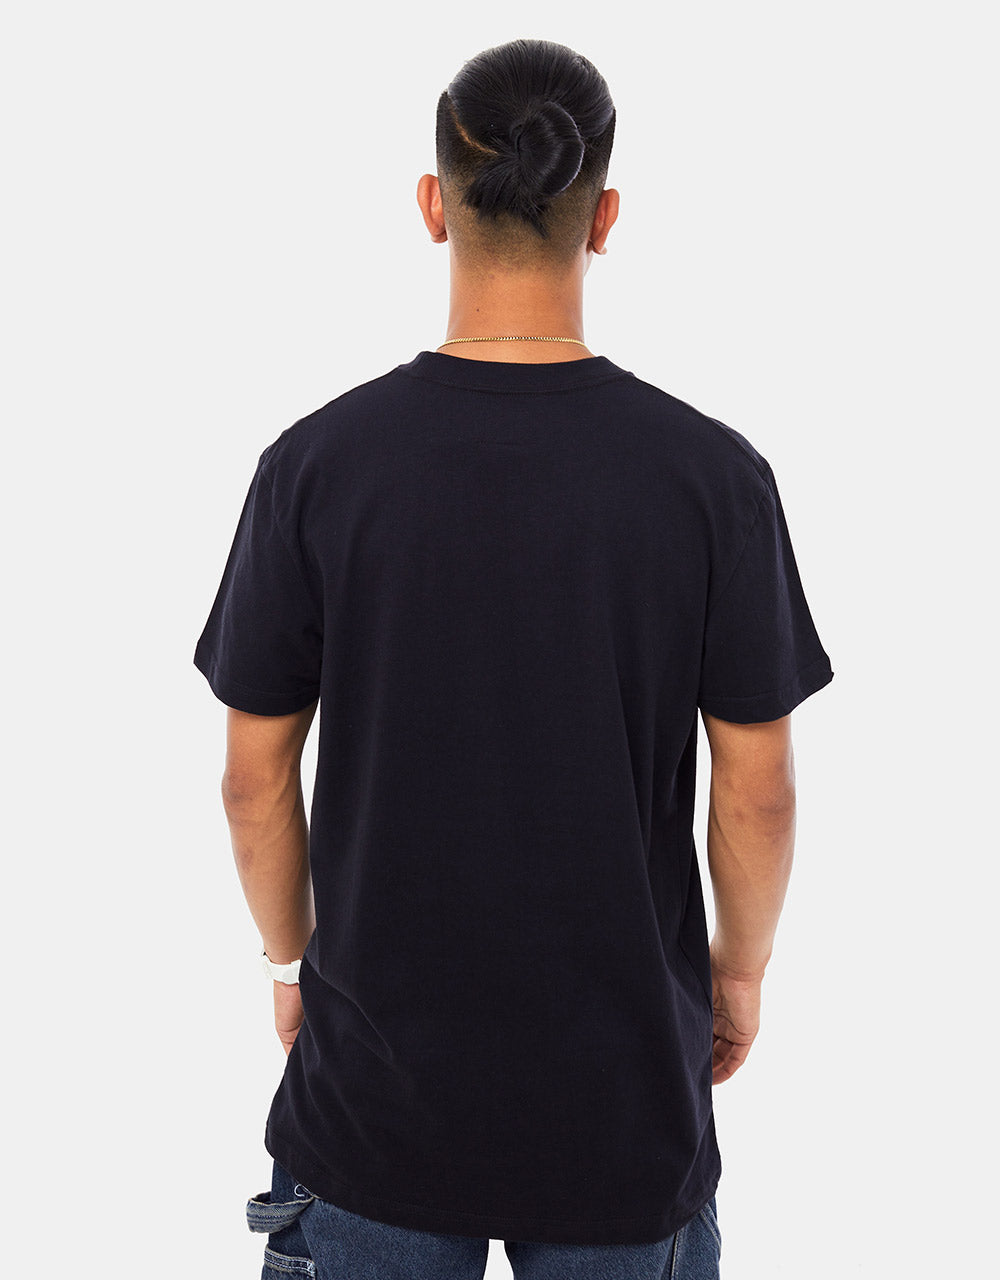 DC Higher Rank T-Shirt - Black